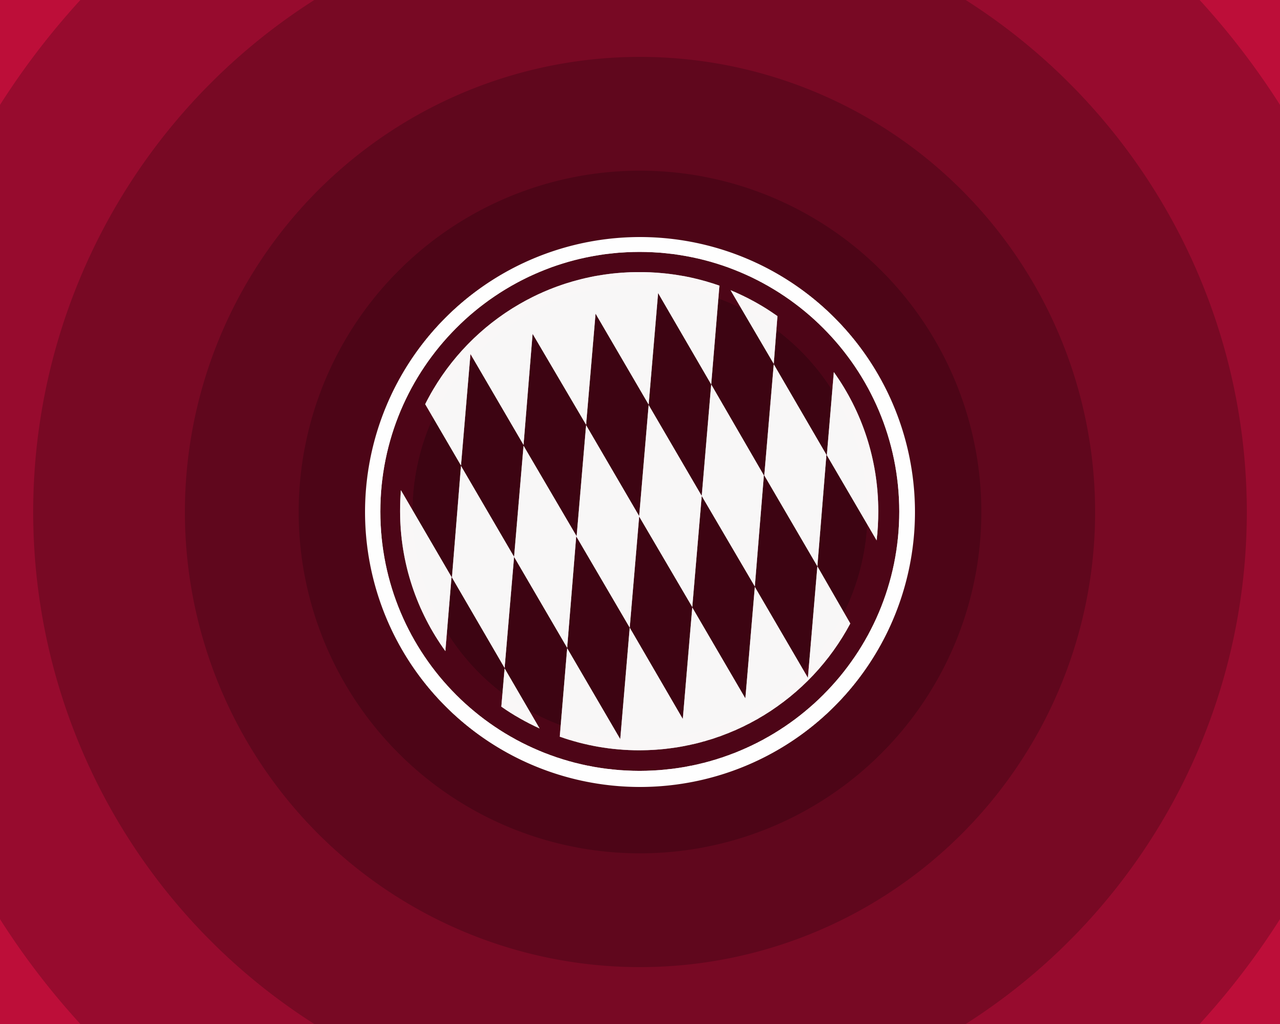 FC Bayern Munich Minimal Logo for 1280 x 1024 resolution